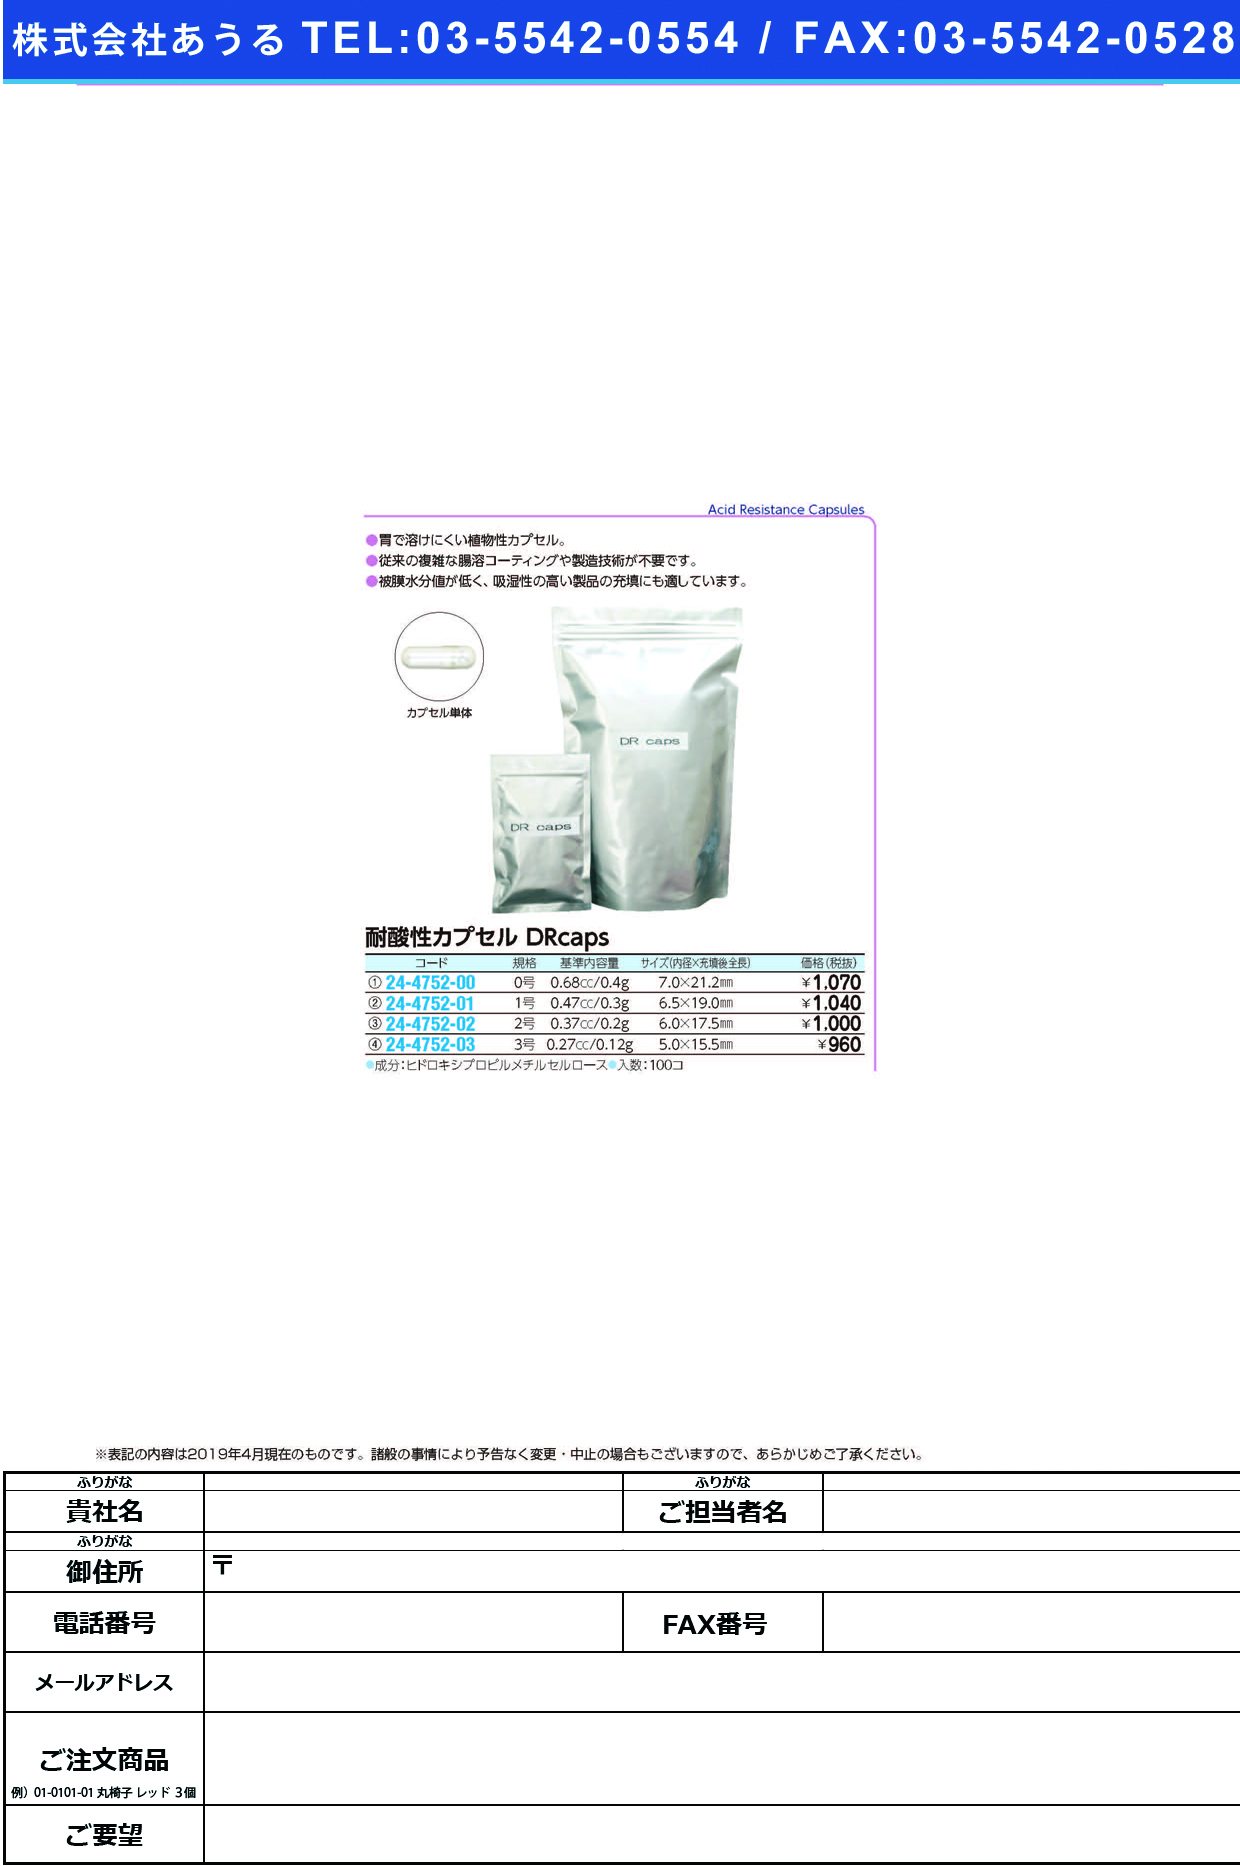 (24-4752-02)耐酸性カプセルＤＲｃａｐｓ #2(ﾄｳﾒｲ)100ｺｲﾘ ﾀｲｻﾝｾｲｶﾌﾟｾﾙDRCAPS【1袋単位】【2019年カタログ商品】